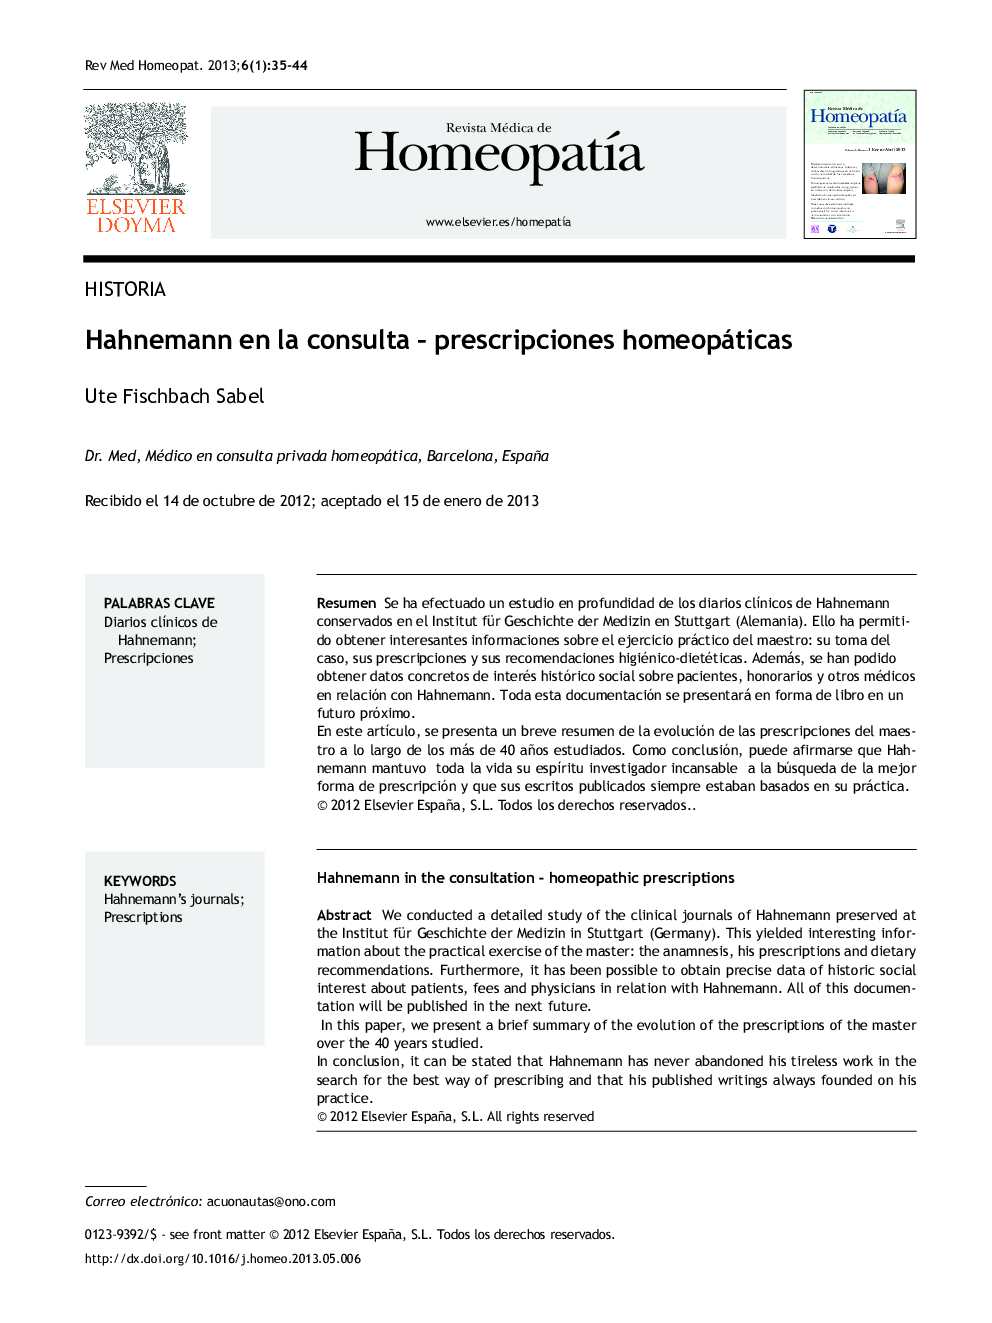 Hahnemann en la consulta - prescripciones homeopáticas